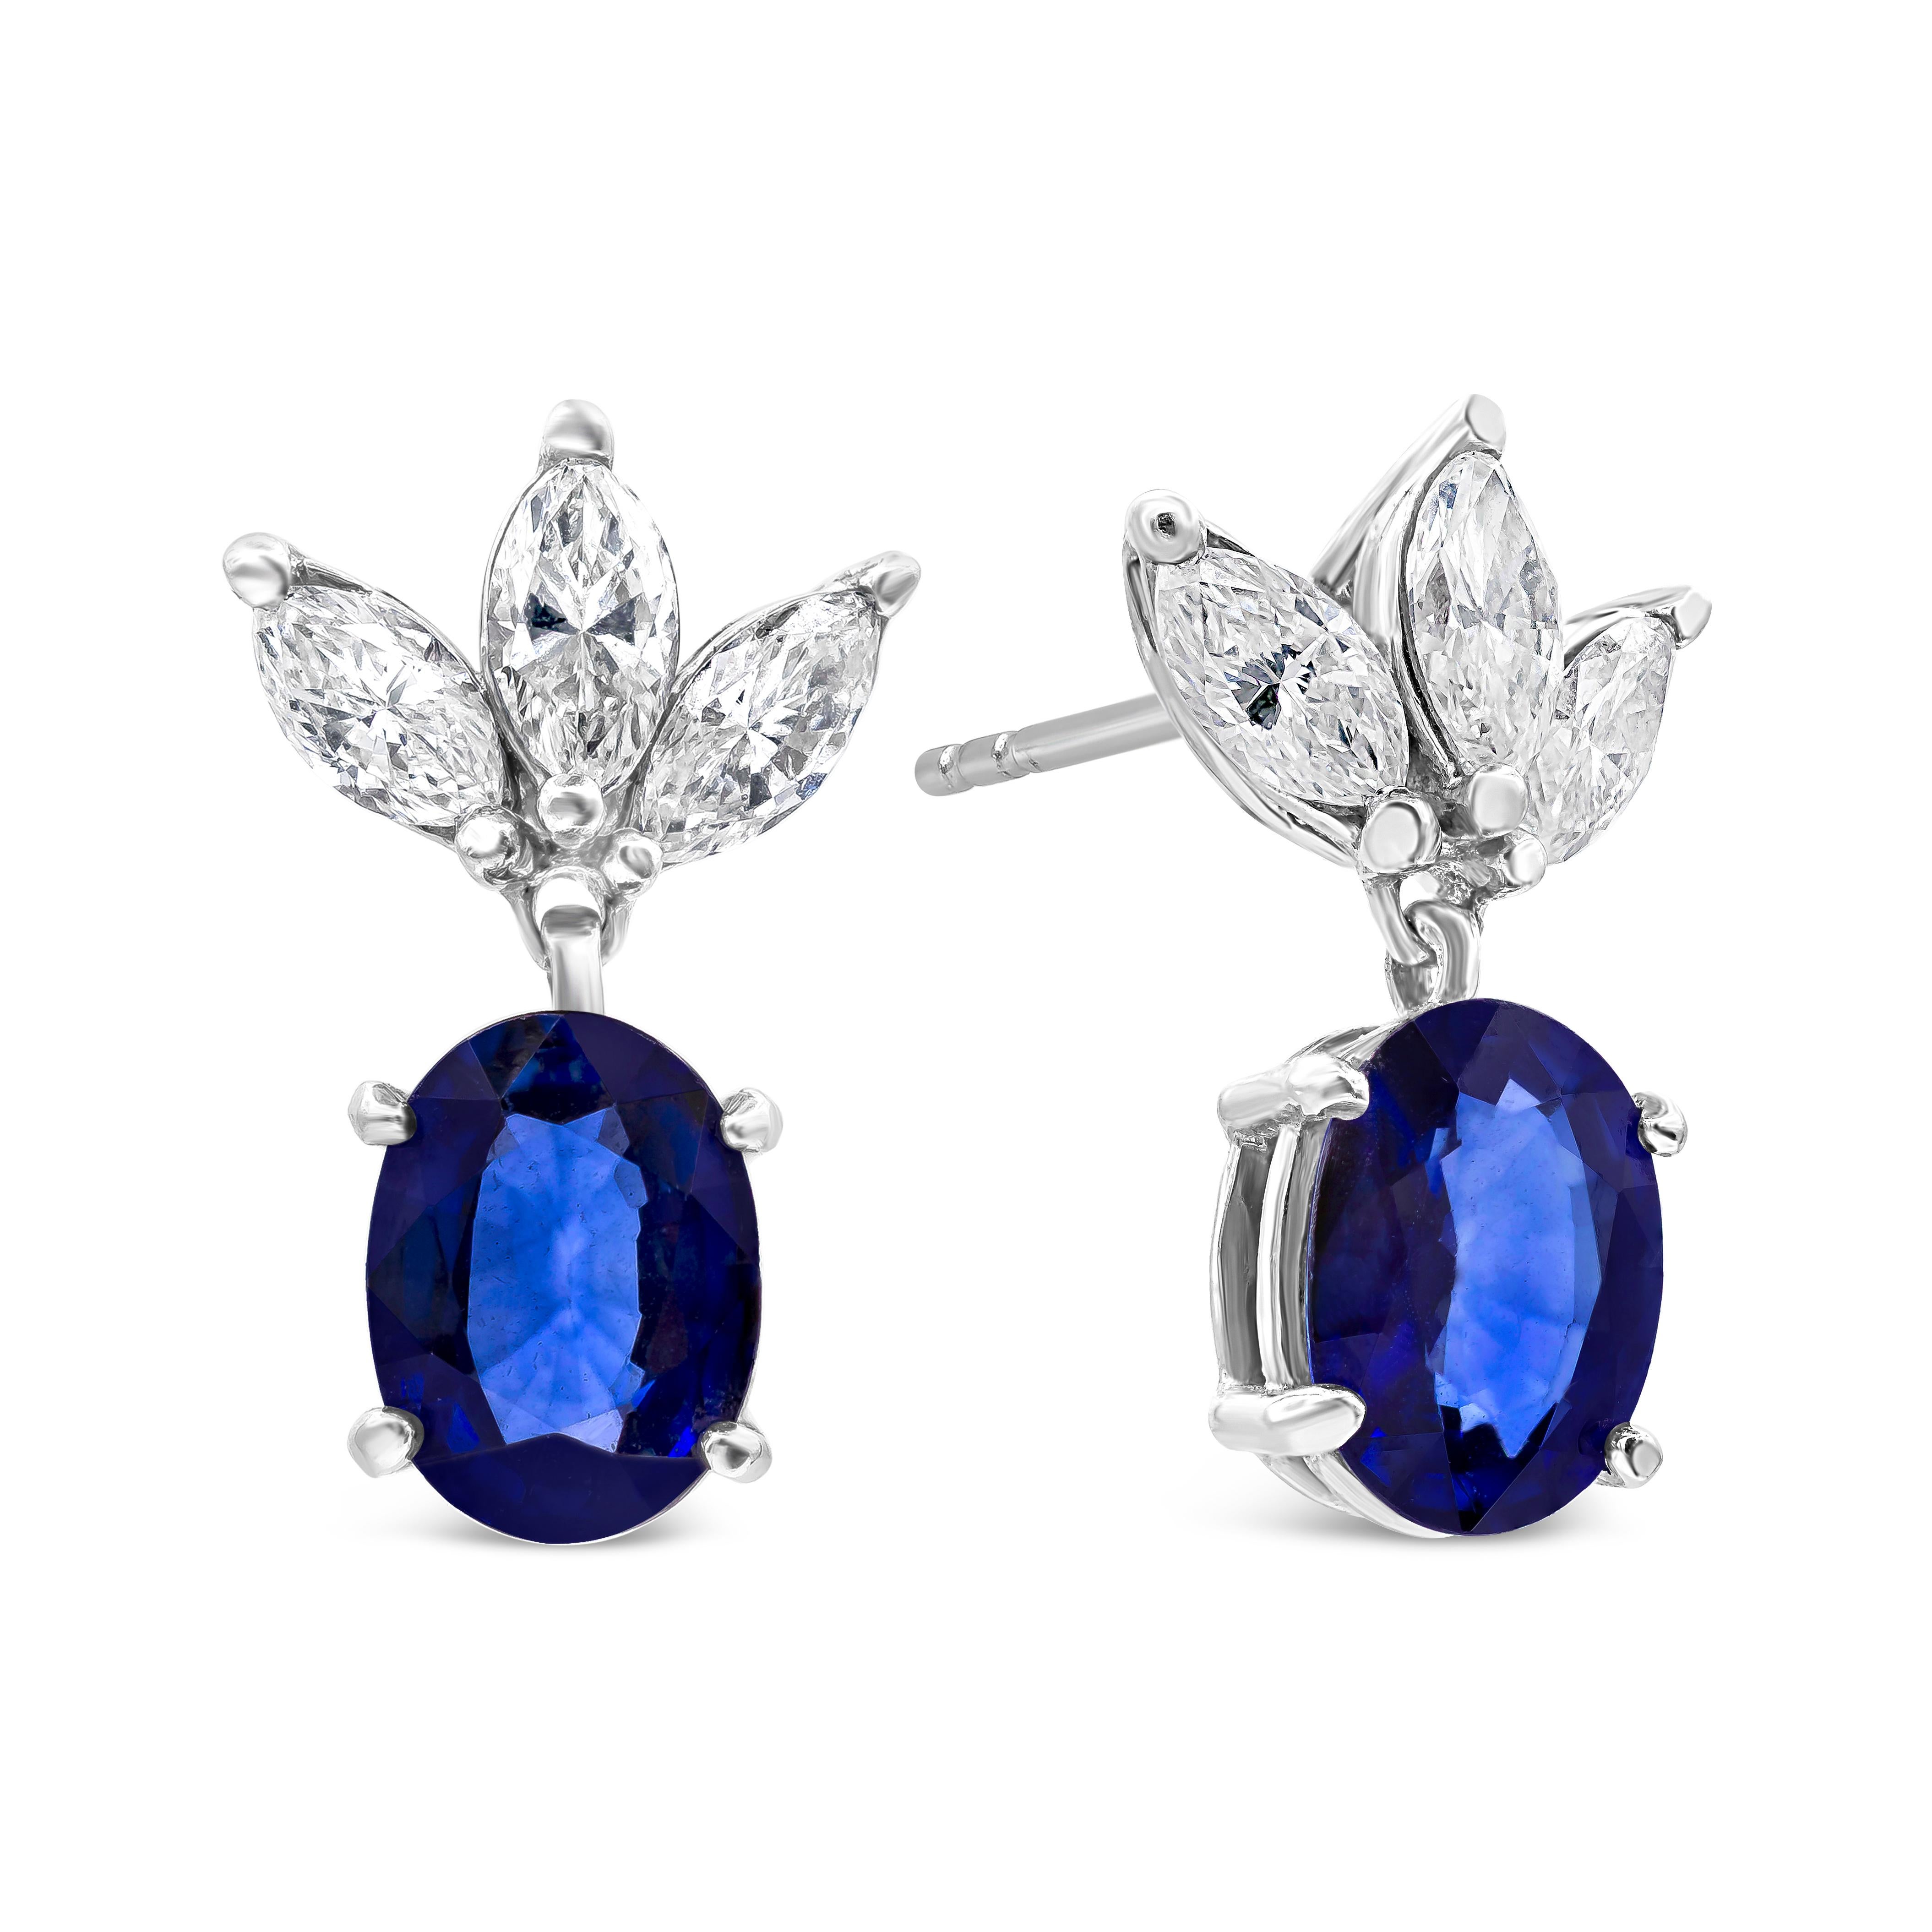 Jeder Ohrring besteht aus einem farbenprächtigen blauen Saphir mit einem Gesamtgewicht von 4,21 Karat, der in einer vierzinkigen Korbfassung gefasst ist. Aufgehängt an drei Diamanten im Marquise-Schliff mit einem Gesamtgewicht von 1,21 Karat. Fein